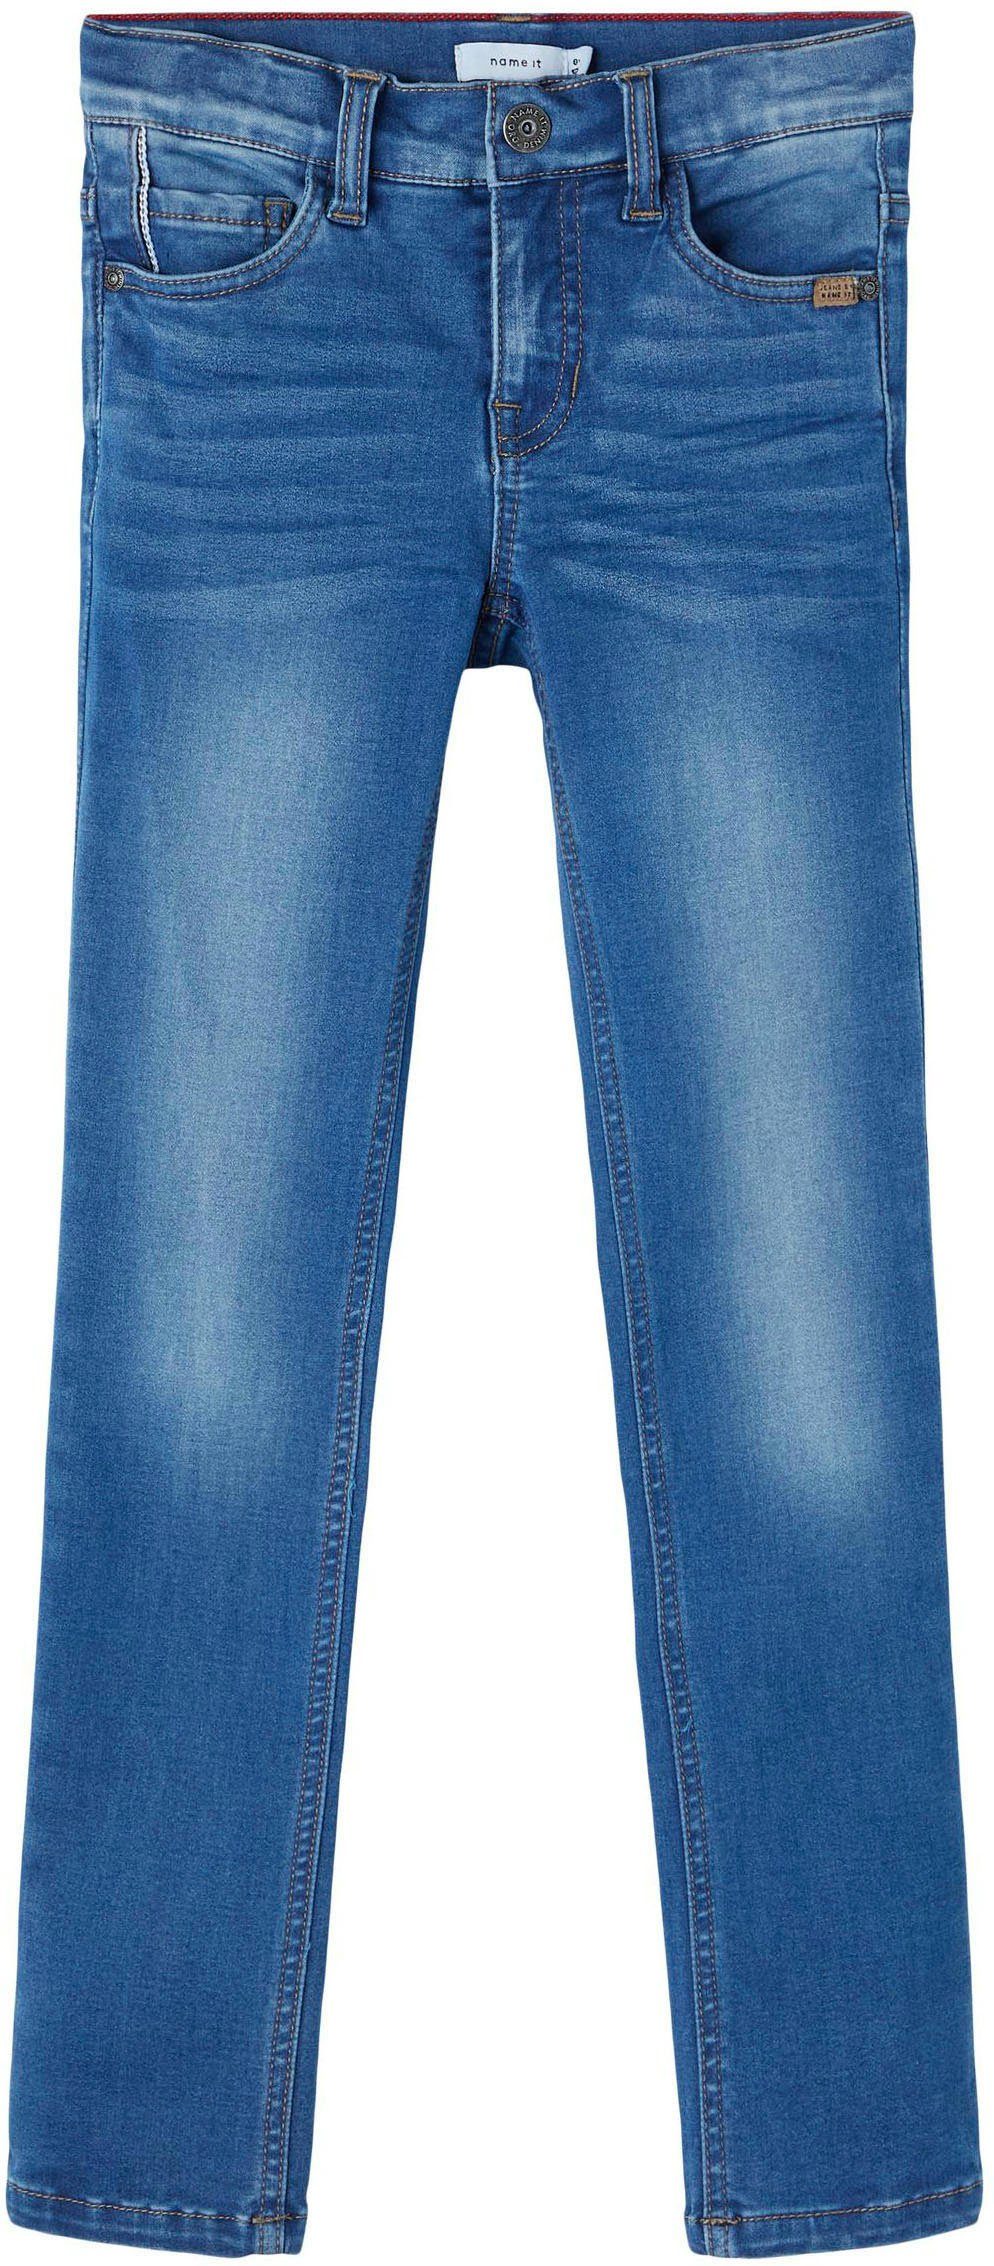 It Stretch-Jeans Name denim blue medium